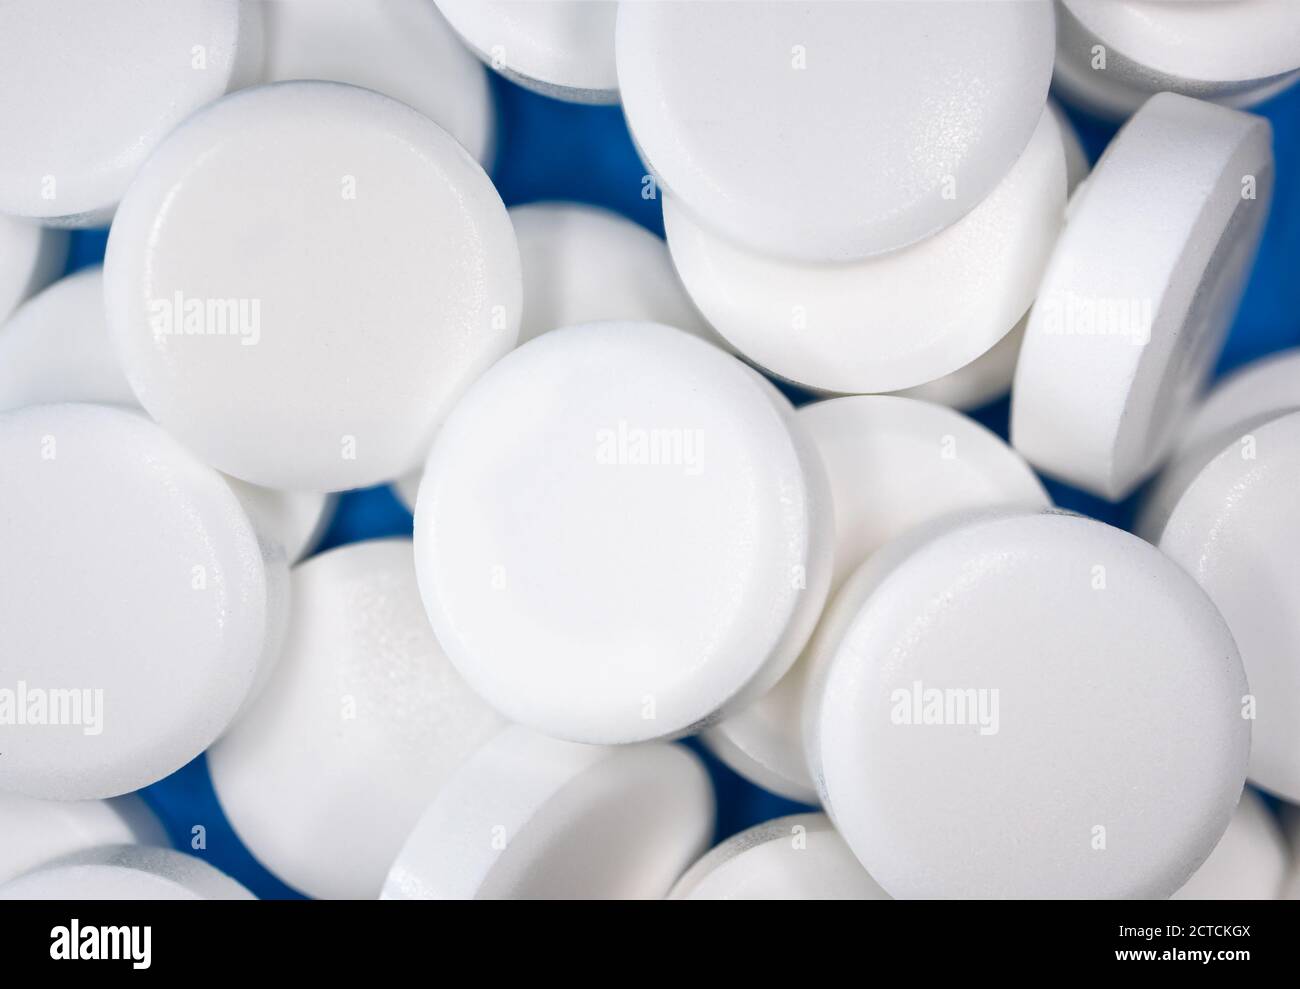 Primo piano di pillole multiple. Molte compresse bianche con sfondo blu. A forma di disco, senza impronte. Farmaco o supplemento. Foto Stock